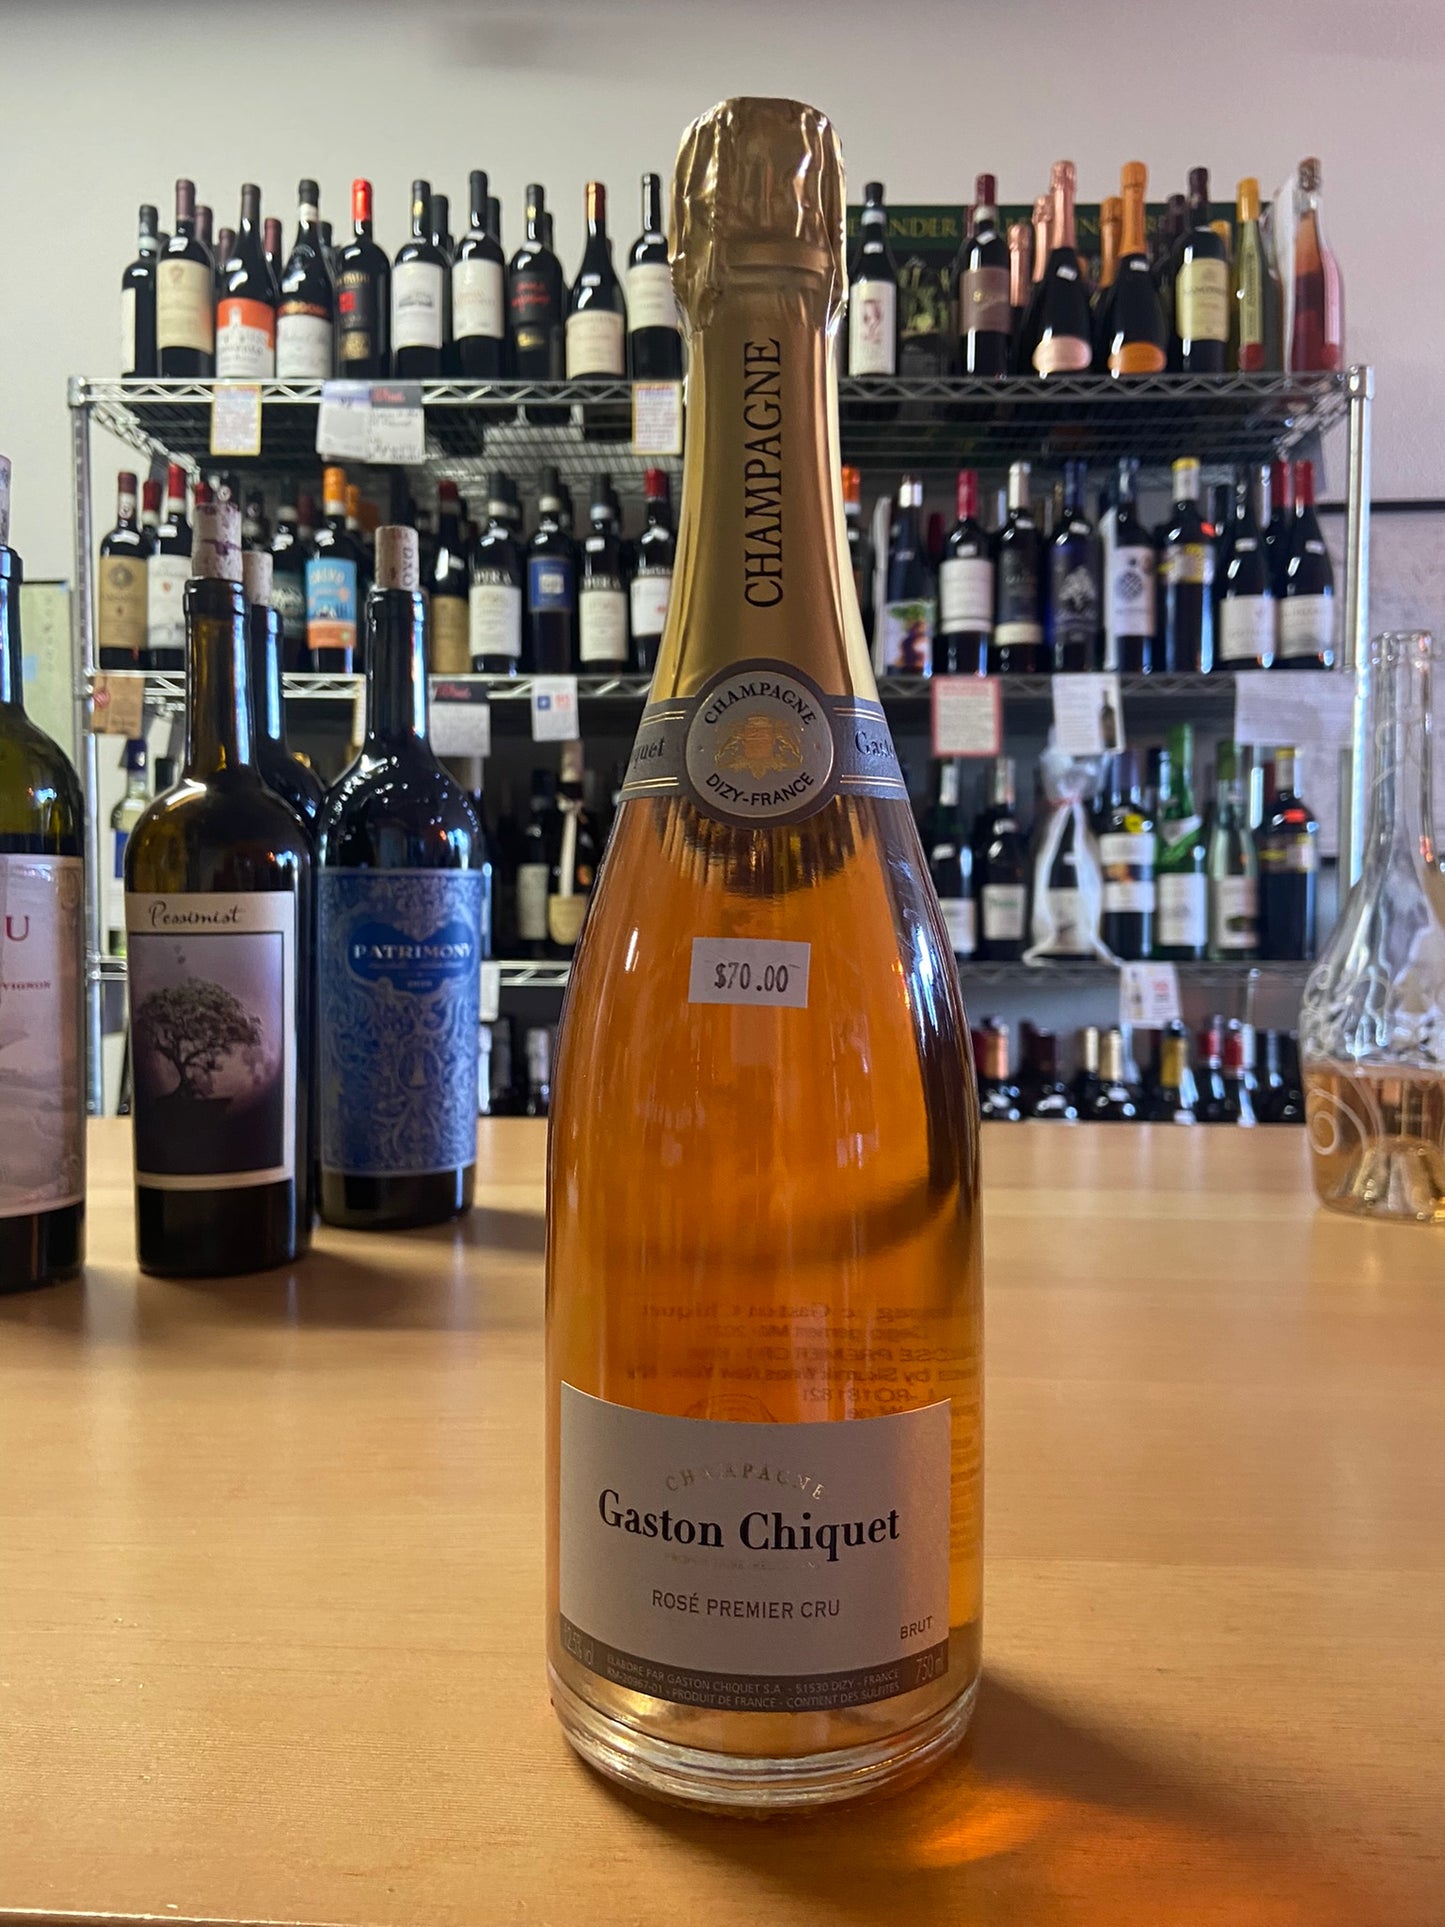 GASTON CHIQUET NV Champagne 'Rose Premier Cru' (Champagne, France)